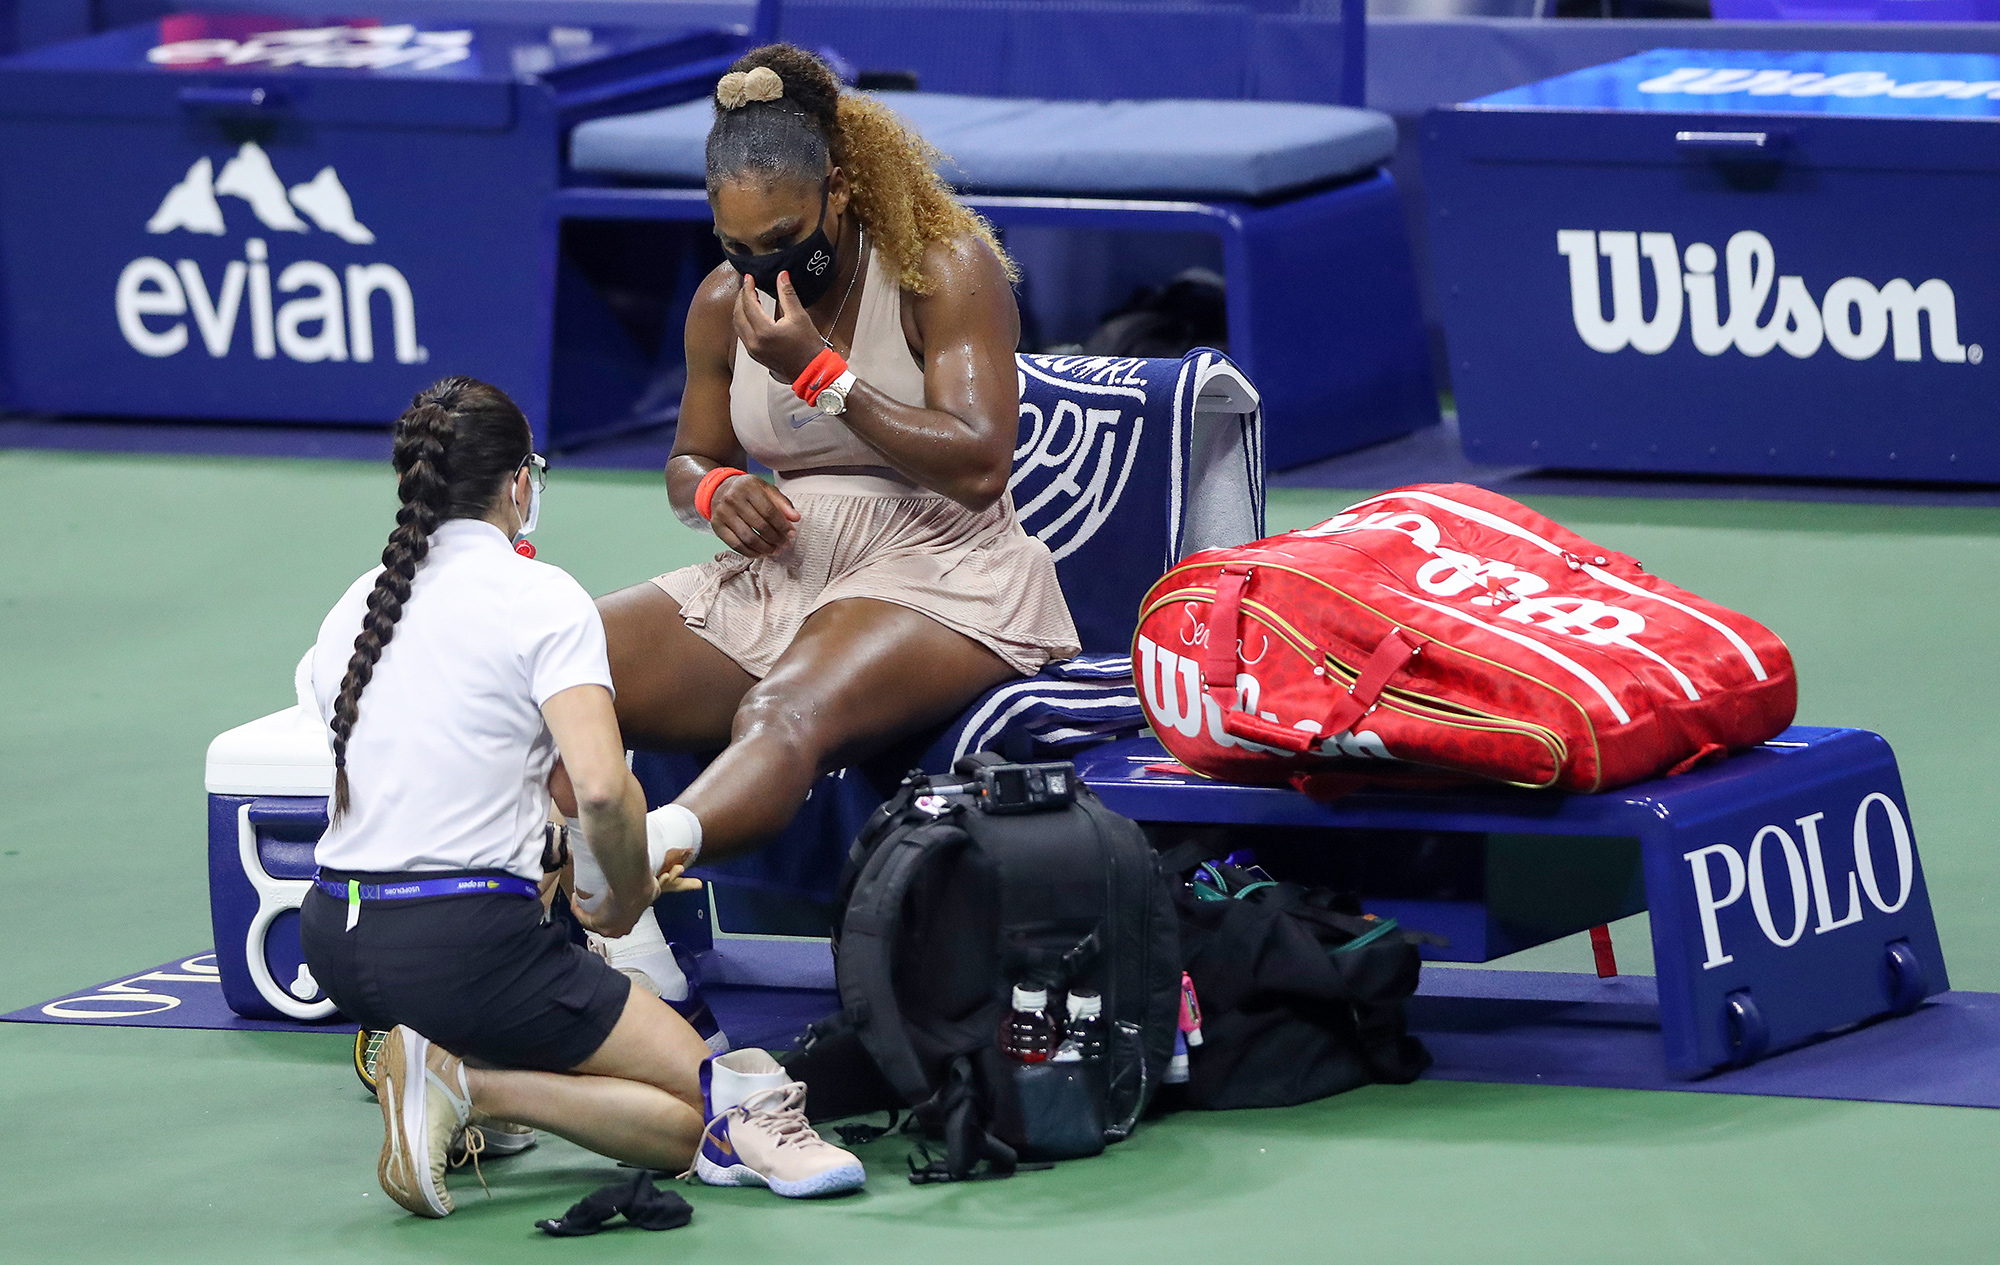 Serena Williams Loses at U.S